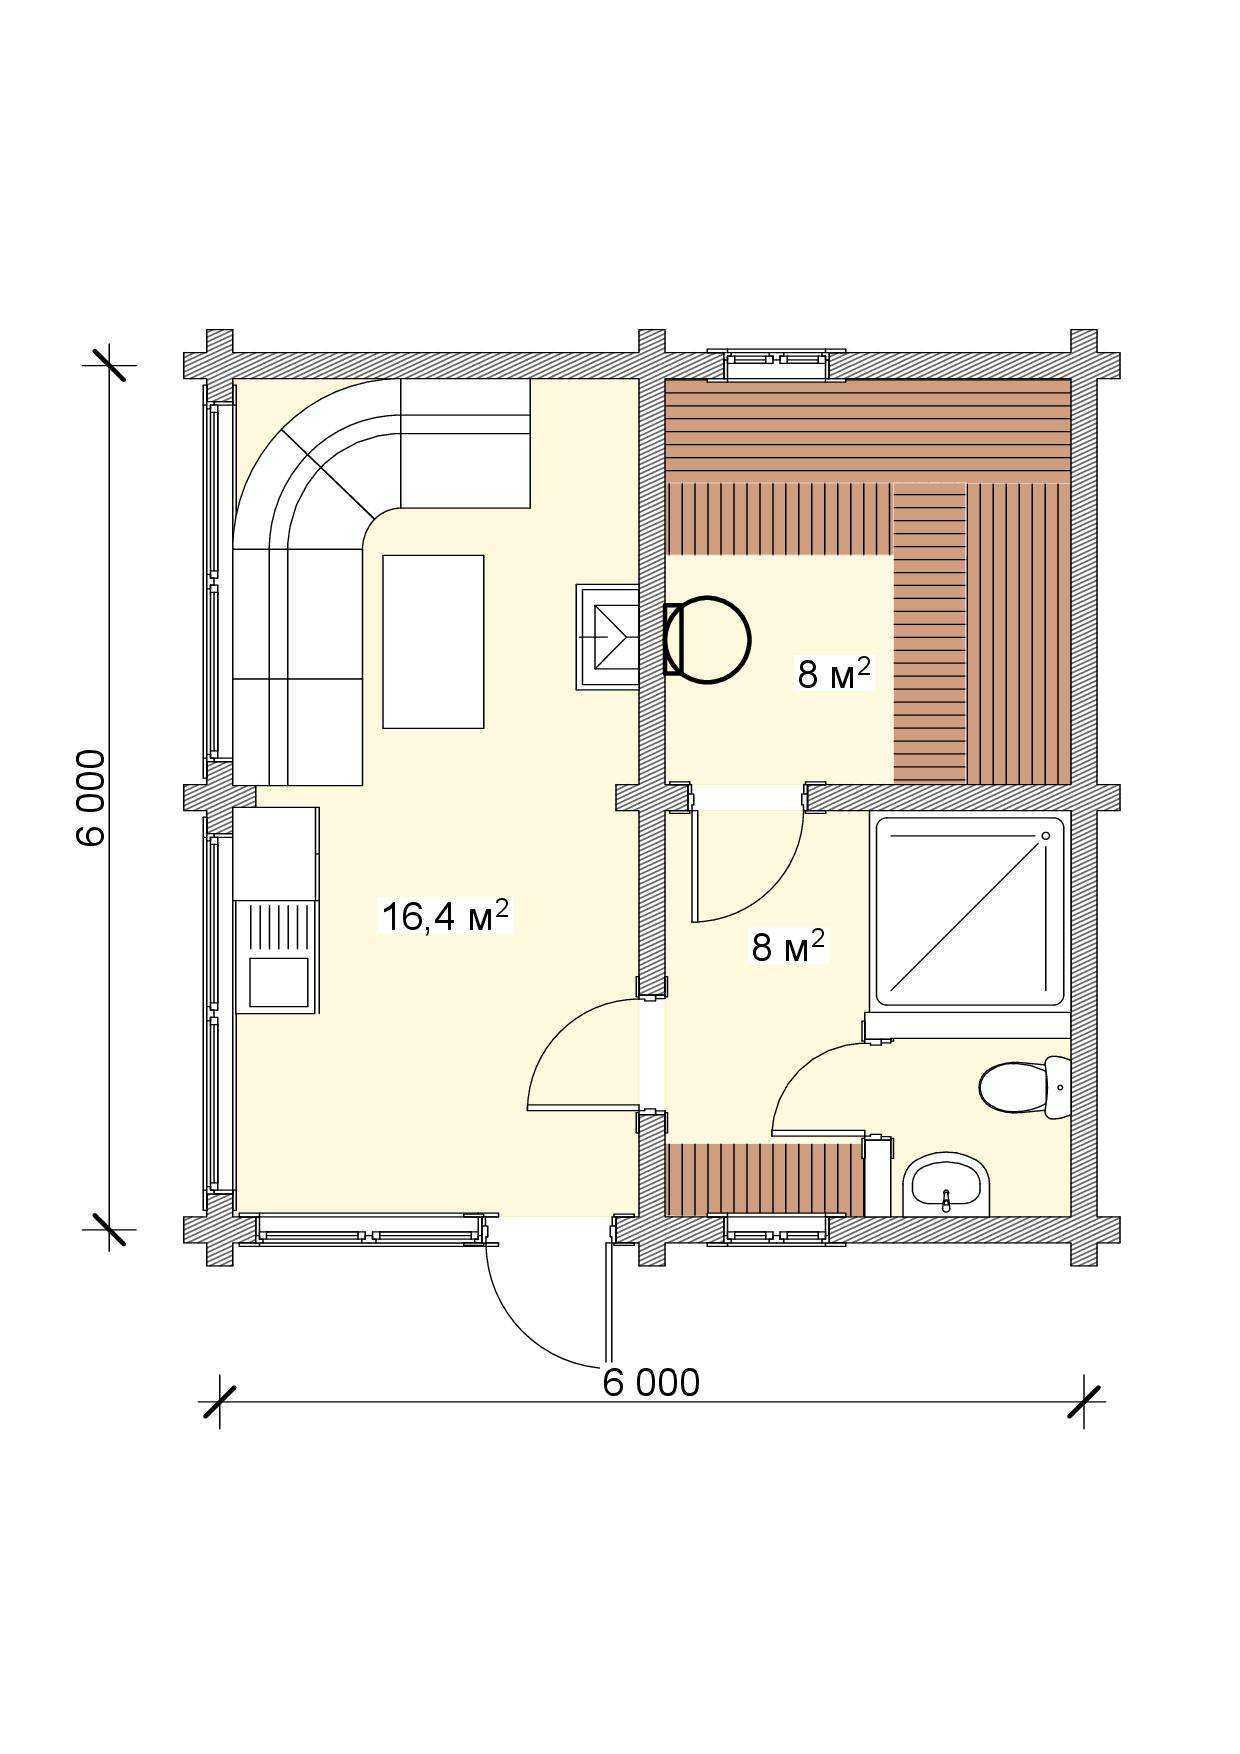 Проект бани площадью 6х6: планировка дома-бани с террасой, туалетом и кухней, план двухэтажной постройки из сруба